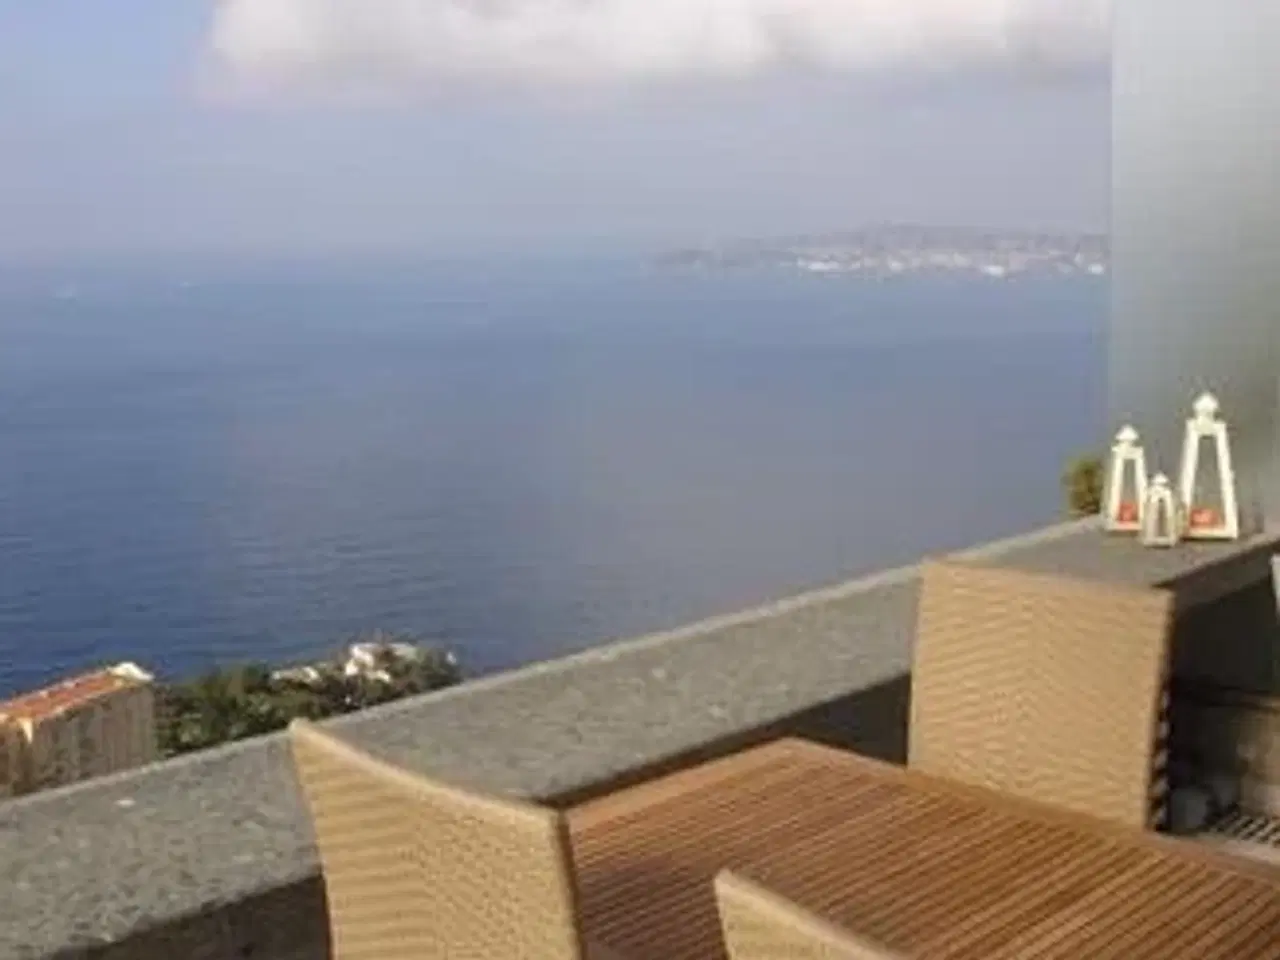 Billede 1 - Super ferielejlighed for 4 personer beliggende i Cap d Ail mellem Nice og Monaco. Stor balkon med markise. Højt og ugenert beliggende i komplekset med 180 gr panoramaudsigt over Middelhavet. Soveværelse med skydedør til stuen, der har sovesofa til 2.